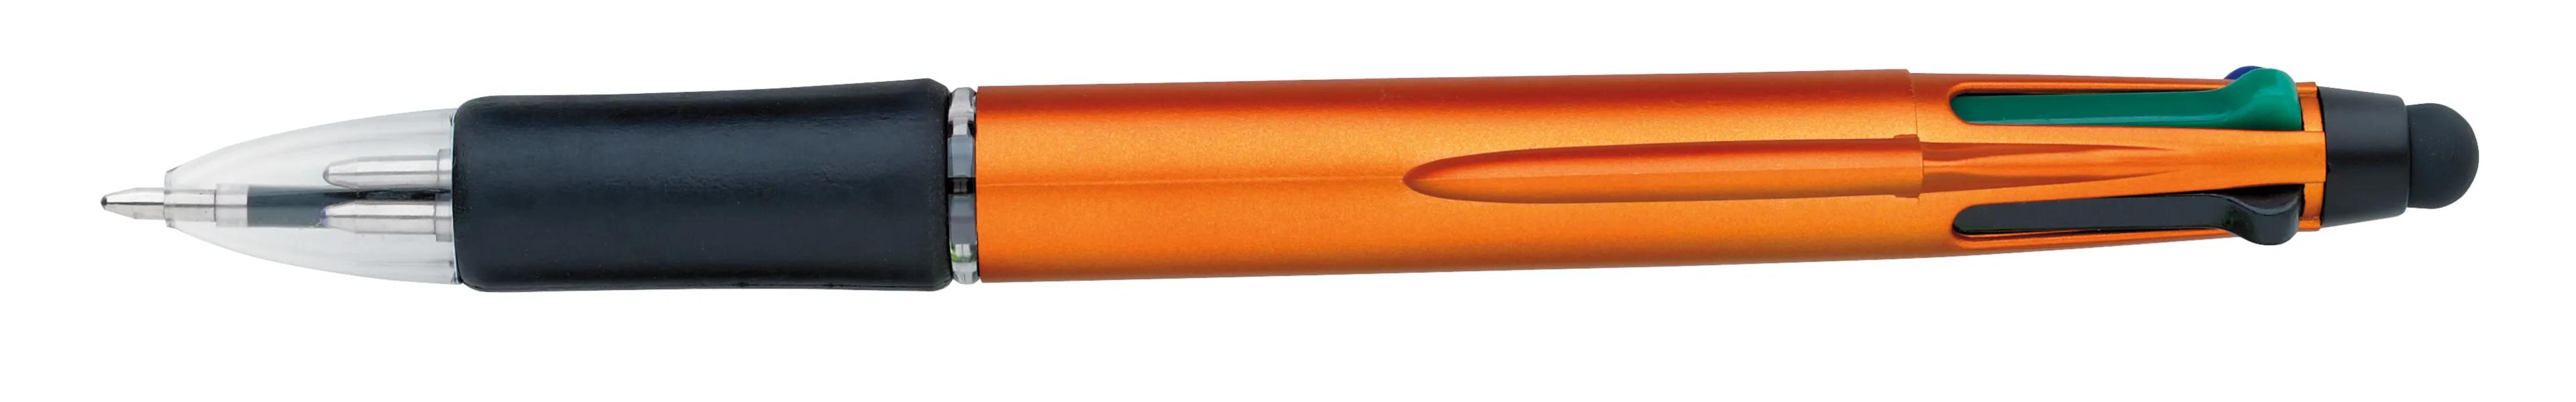 Orbitor Metallic Stylus Pen 11 of 56